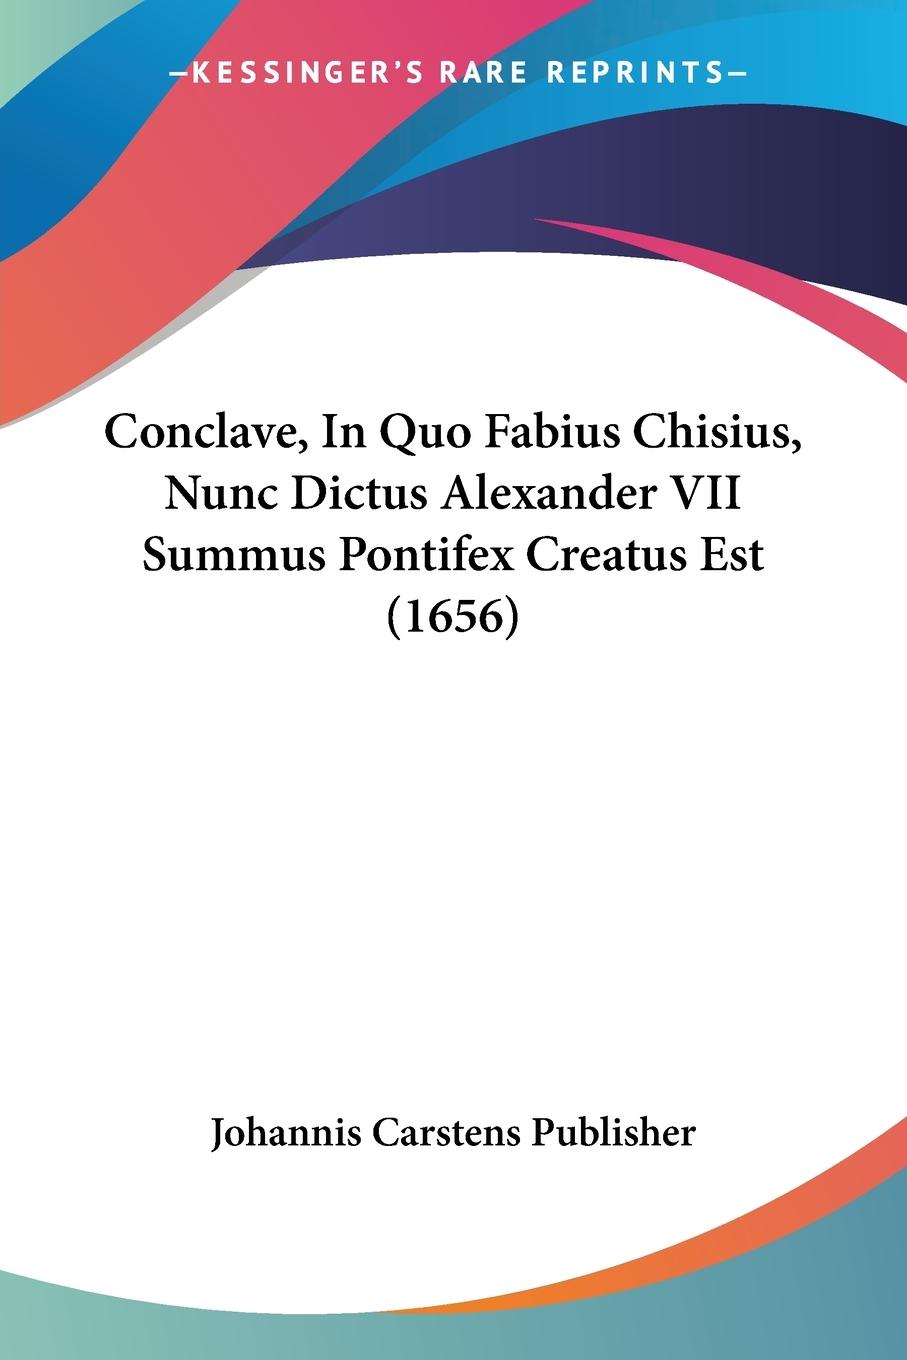 Conclave, In Quo Fabius Chisius, Nunc Dictus Alexander VII Summus Pontifex Creatus Est (1656) - Johannis Carstens Publisher